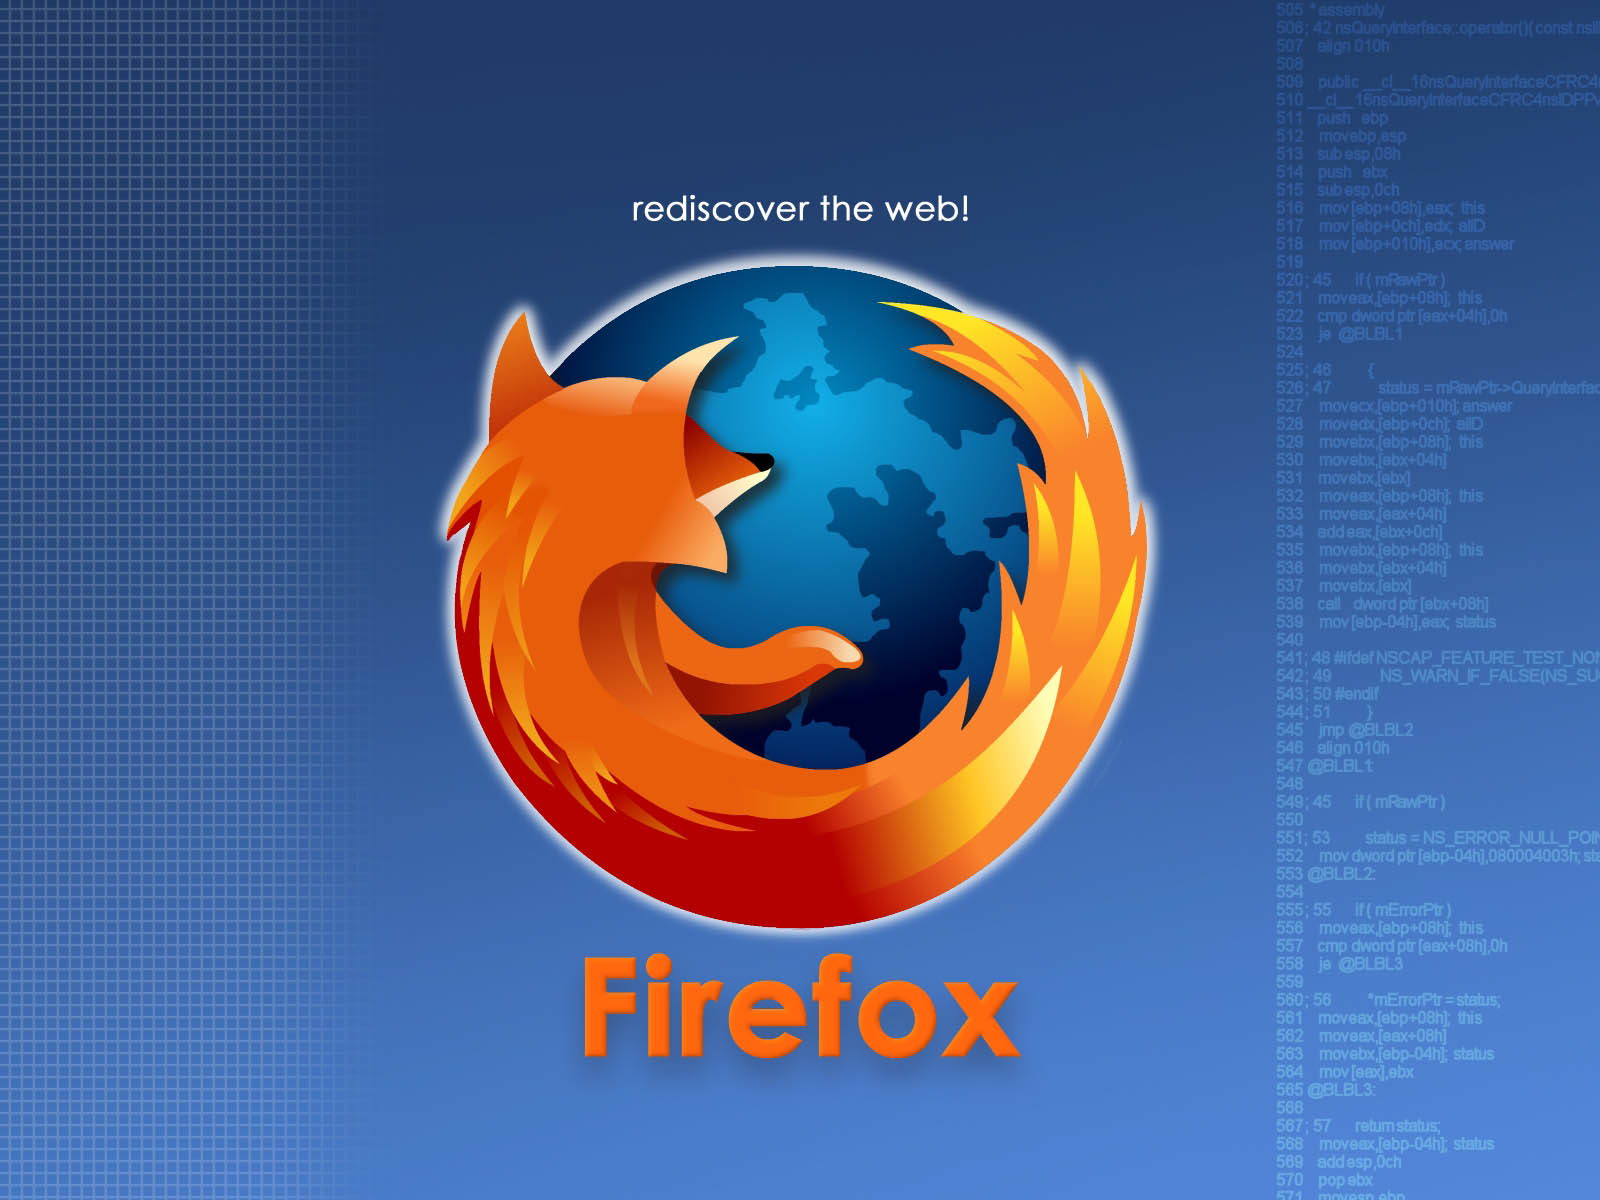 Wallpaper Pc Puter Firefox The Best